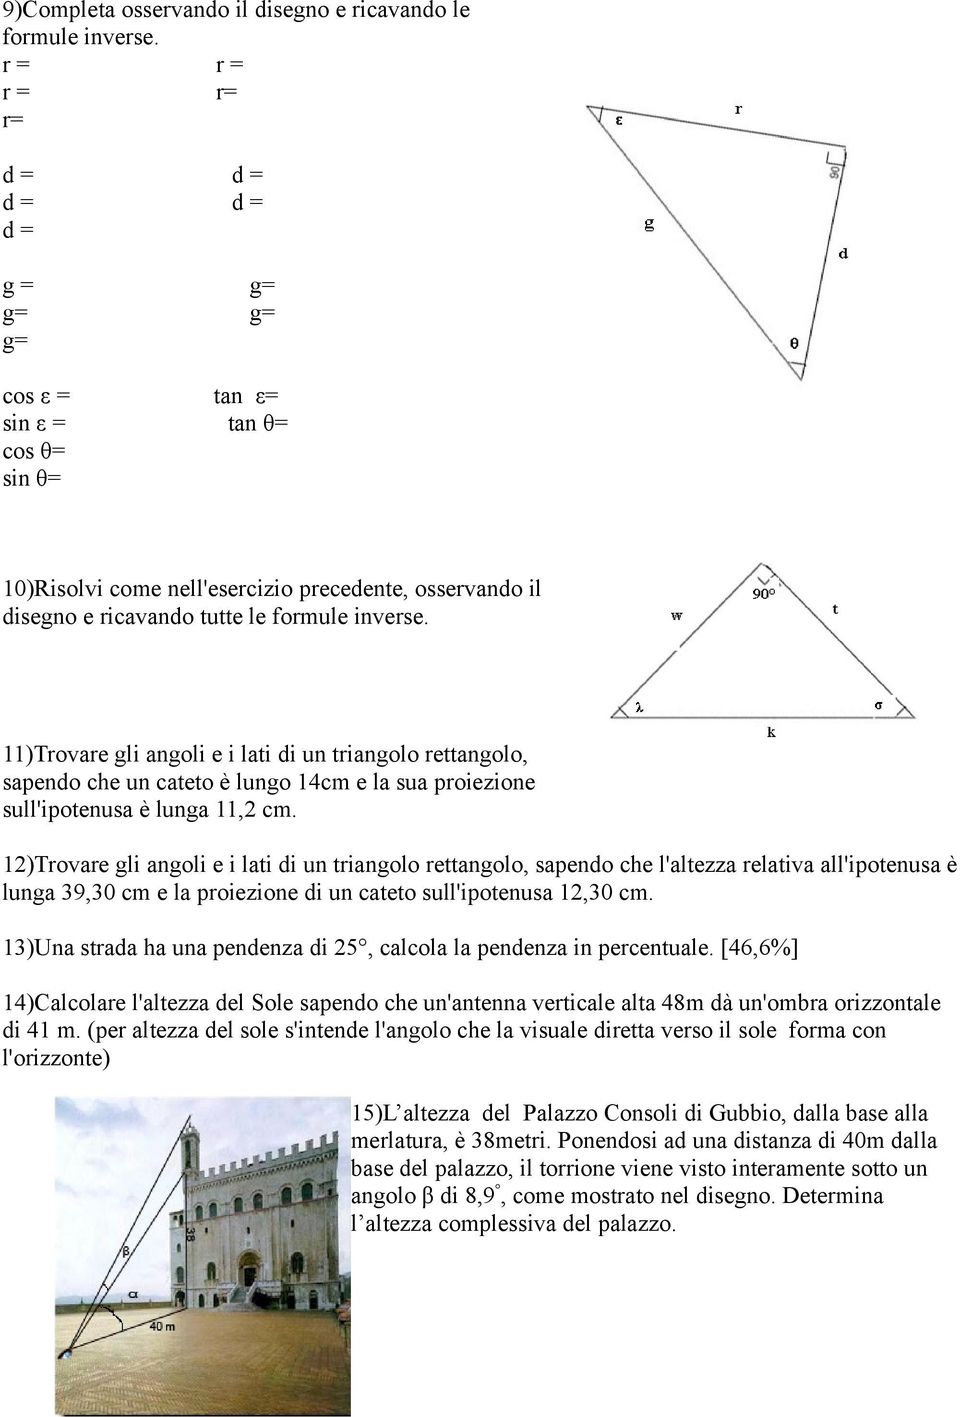 11)Trovare gli angoli e i lati di un triangolo rettangolo, sapendo che un cateto è lungo 14cm e la sua proiezione sull'ipotenusa è lunga 11,2 cm.